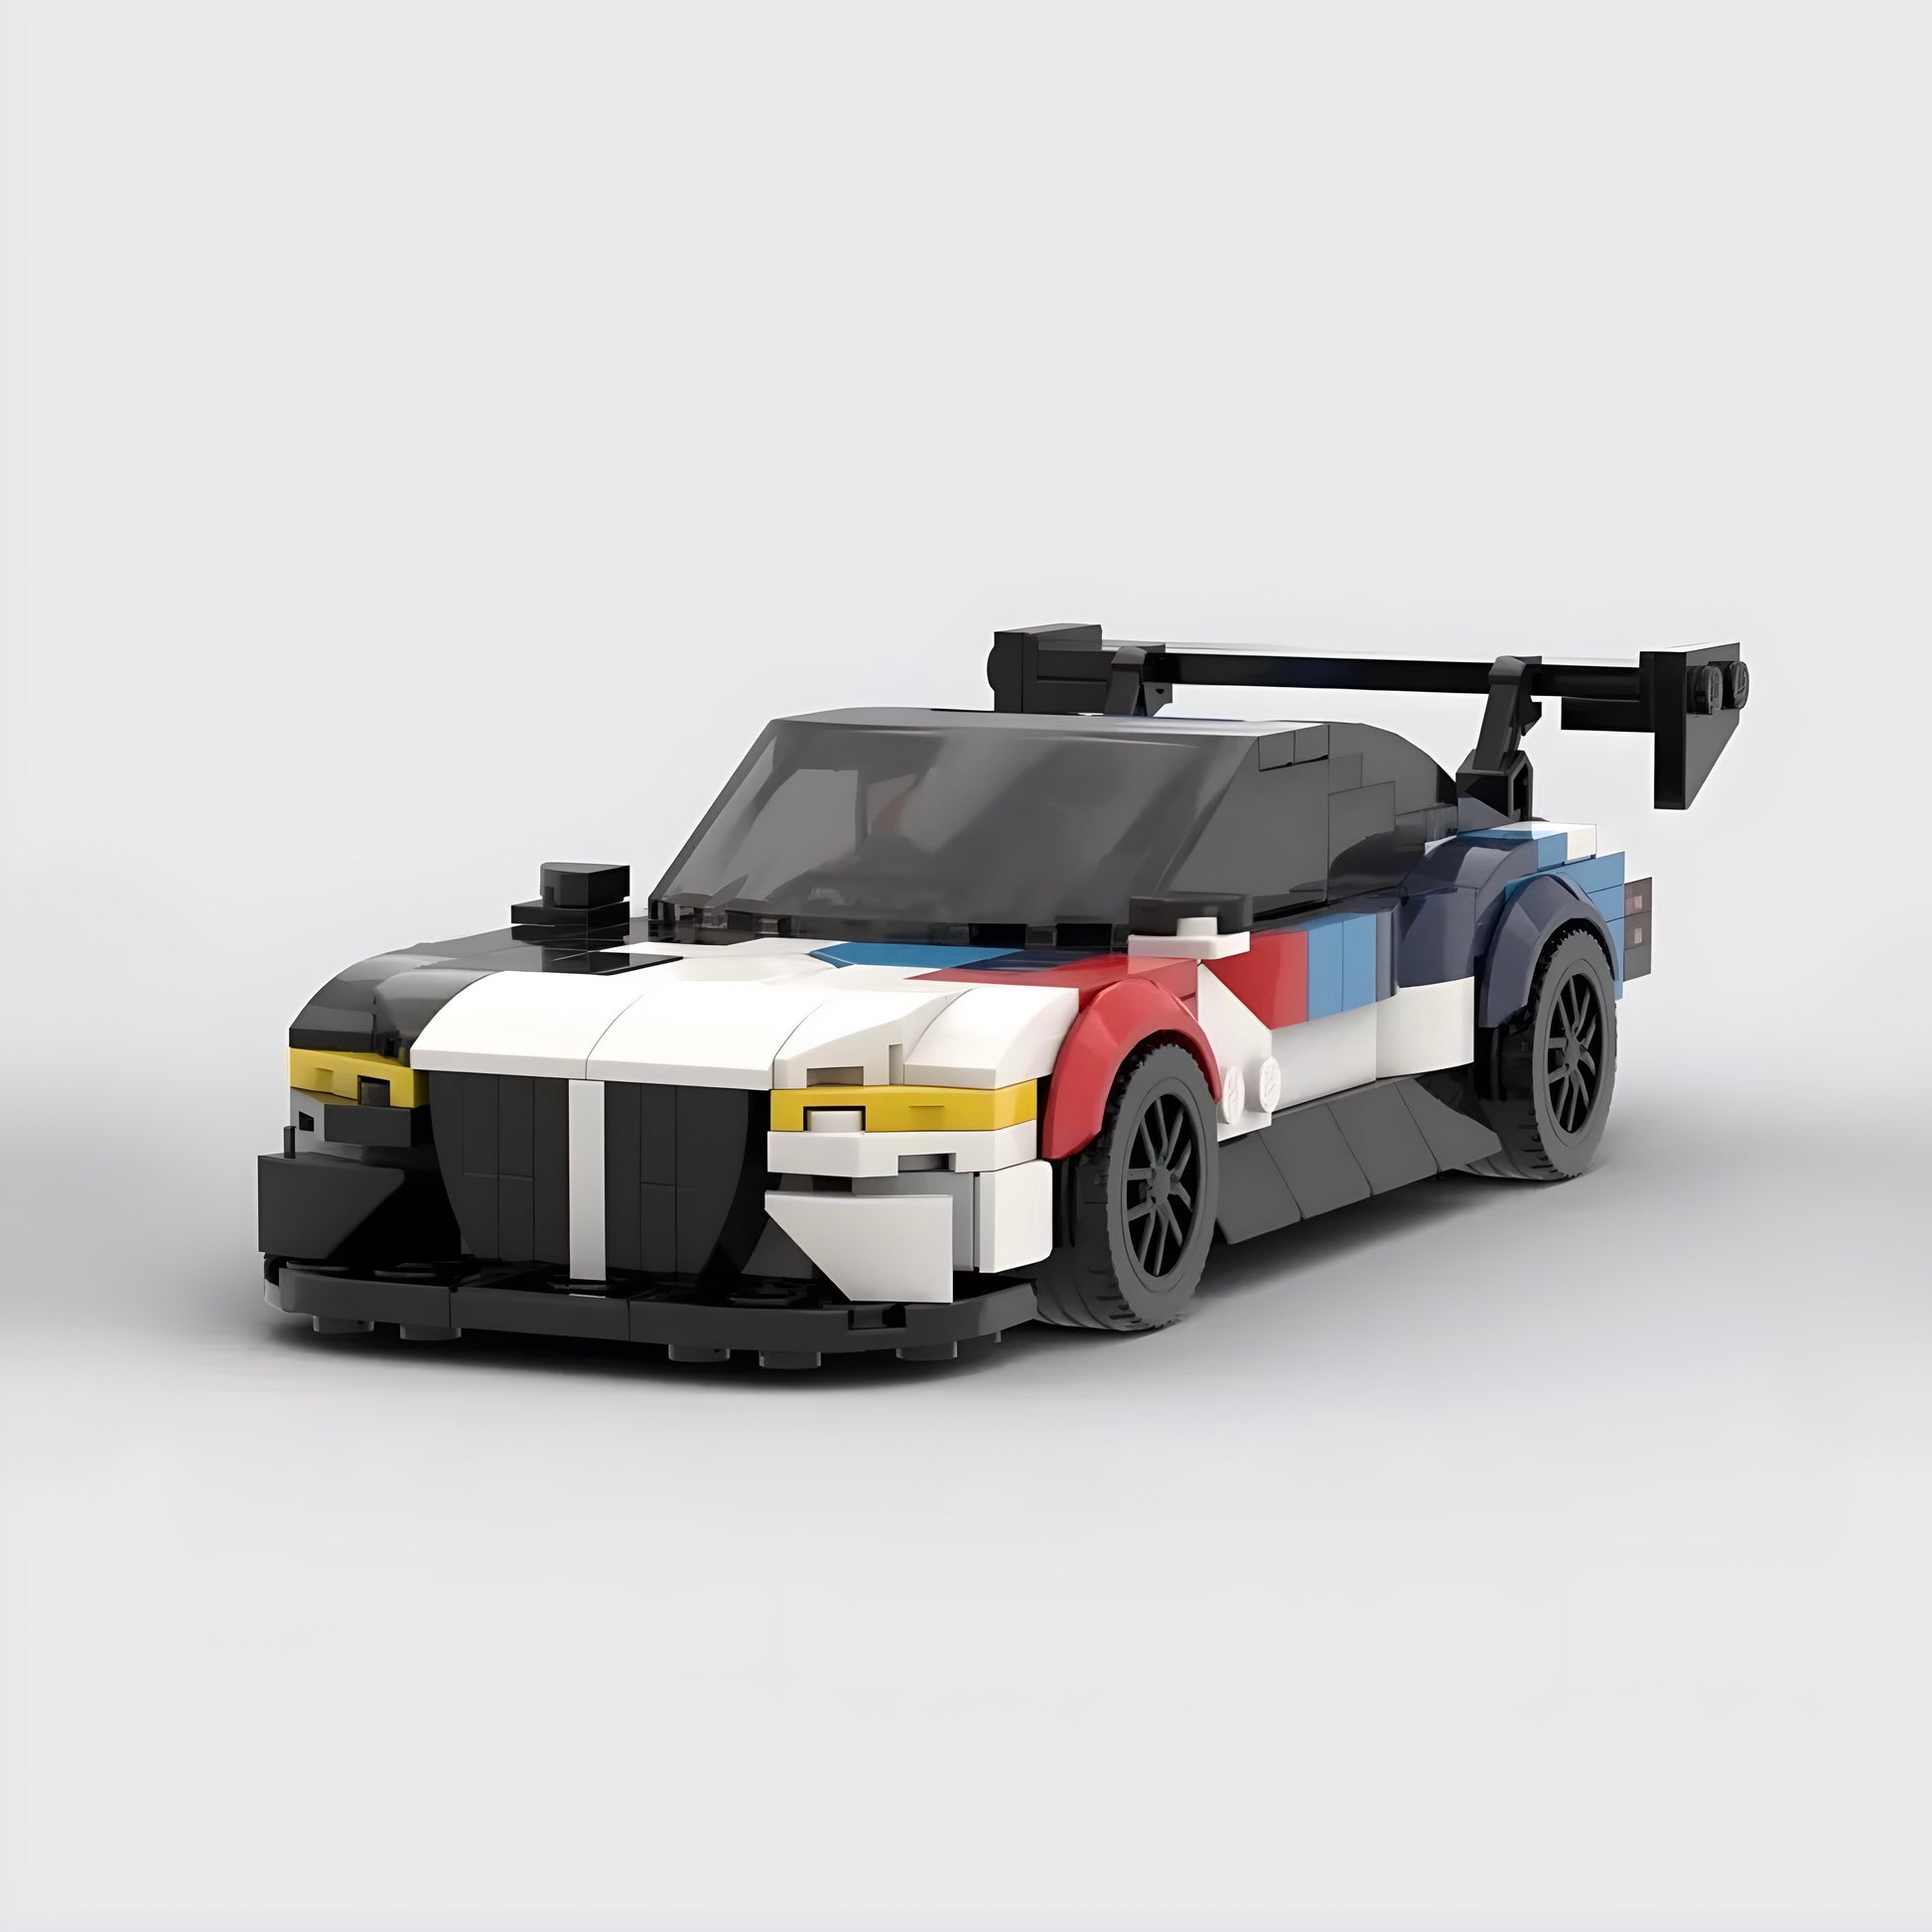 Lego Technic BMW M4 GT3